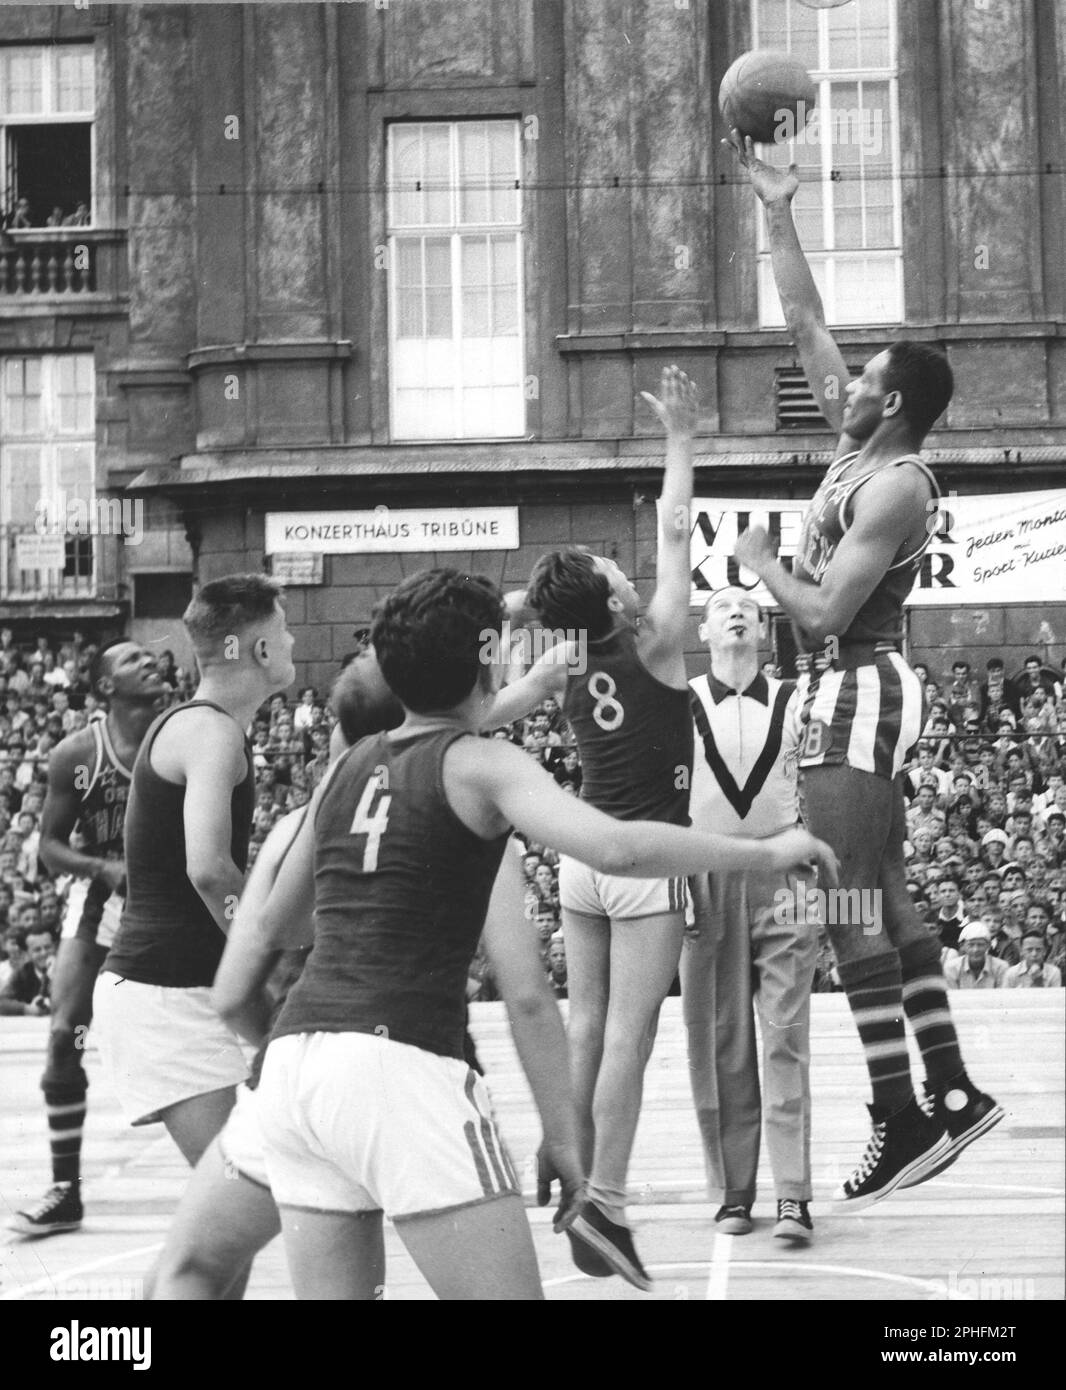 Photographie des Harlem Globetrotters jouant au basket-ball contre une équipe autrichienne, Vienne, Autriche, 1950. (Photo de l'Agence d'information des États-Unis Banque D'Images